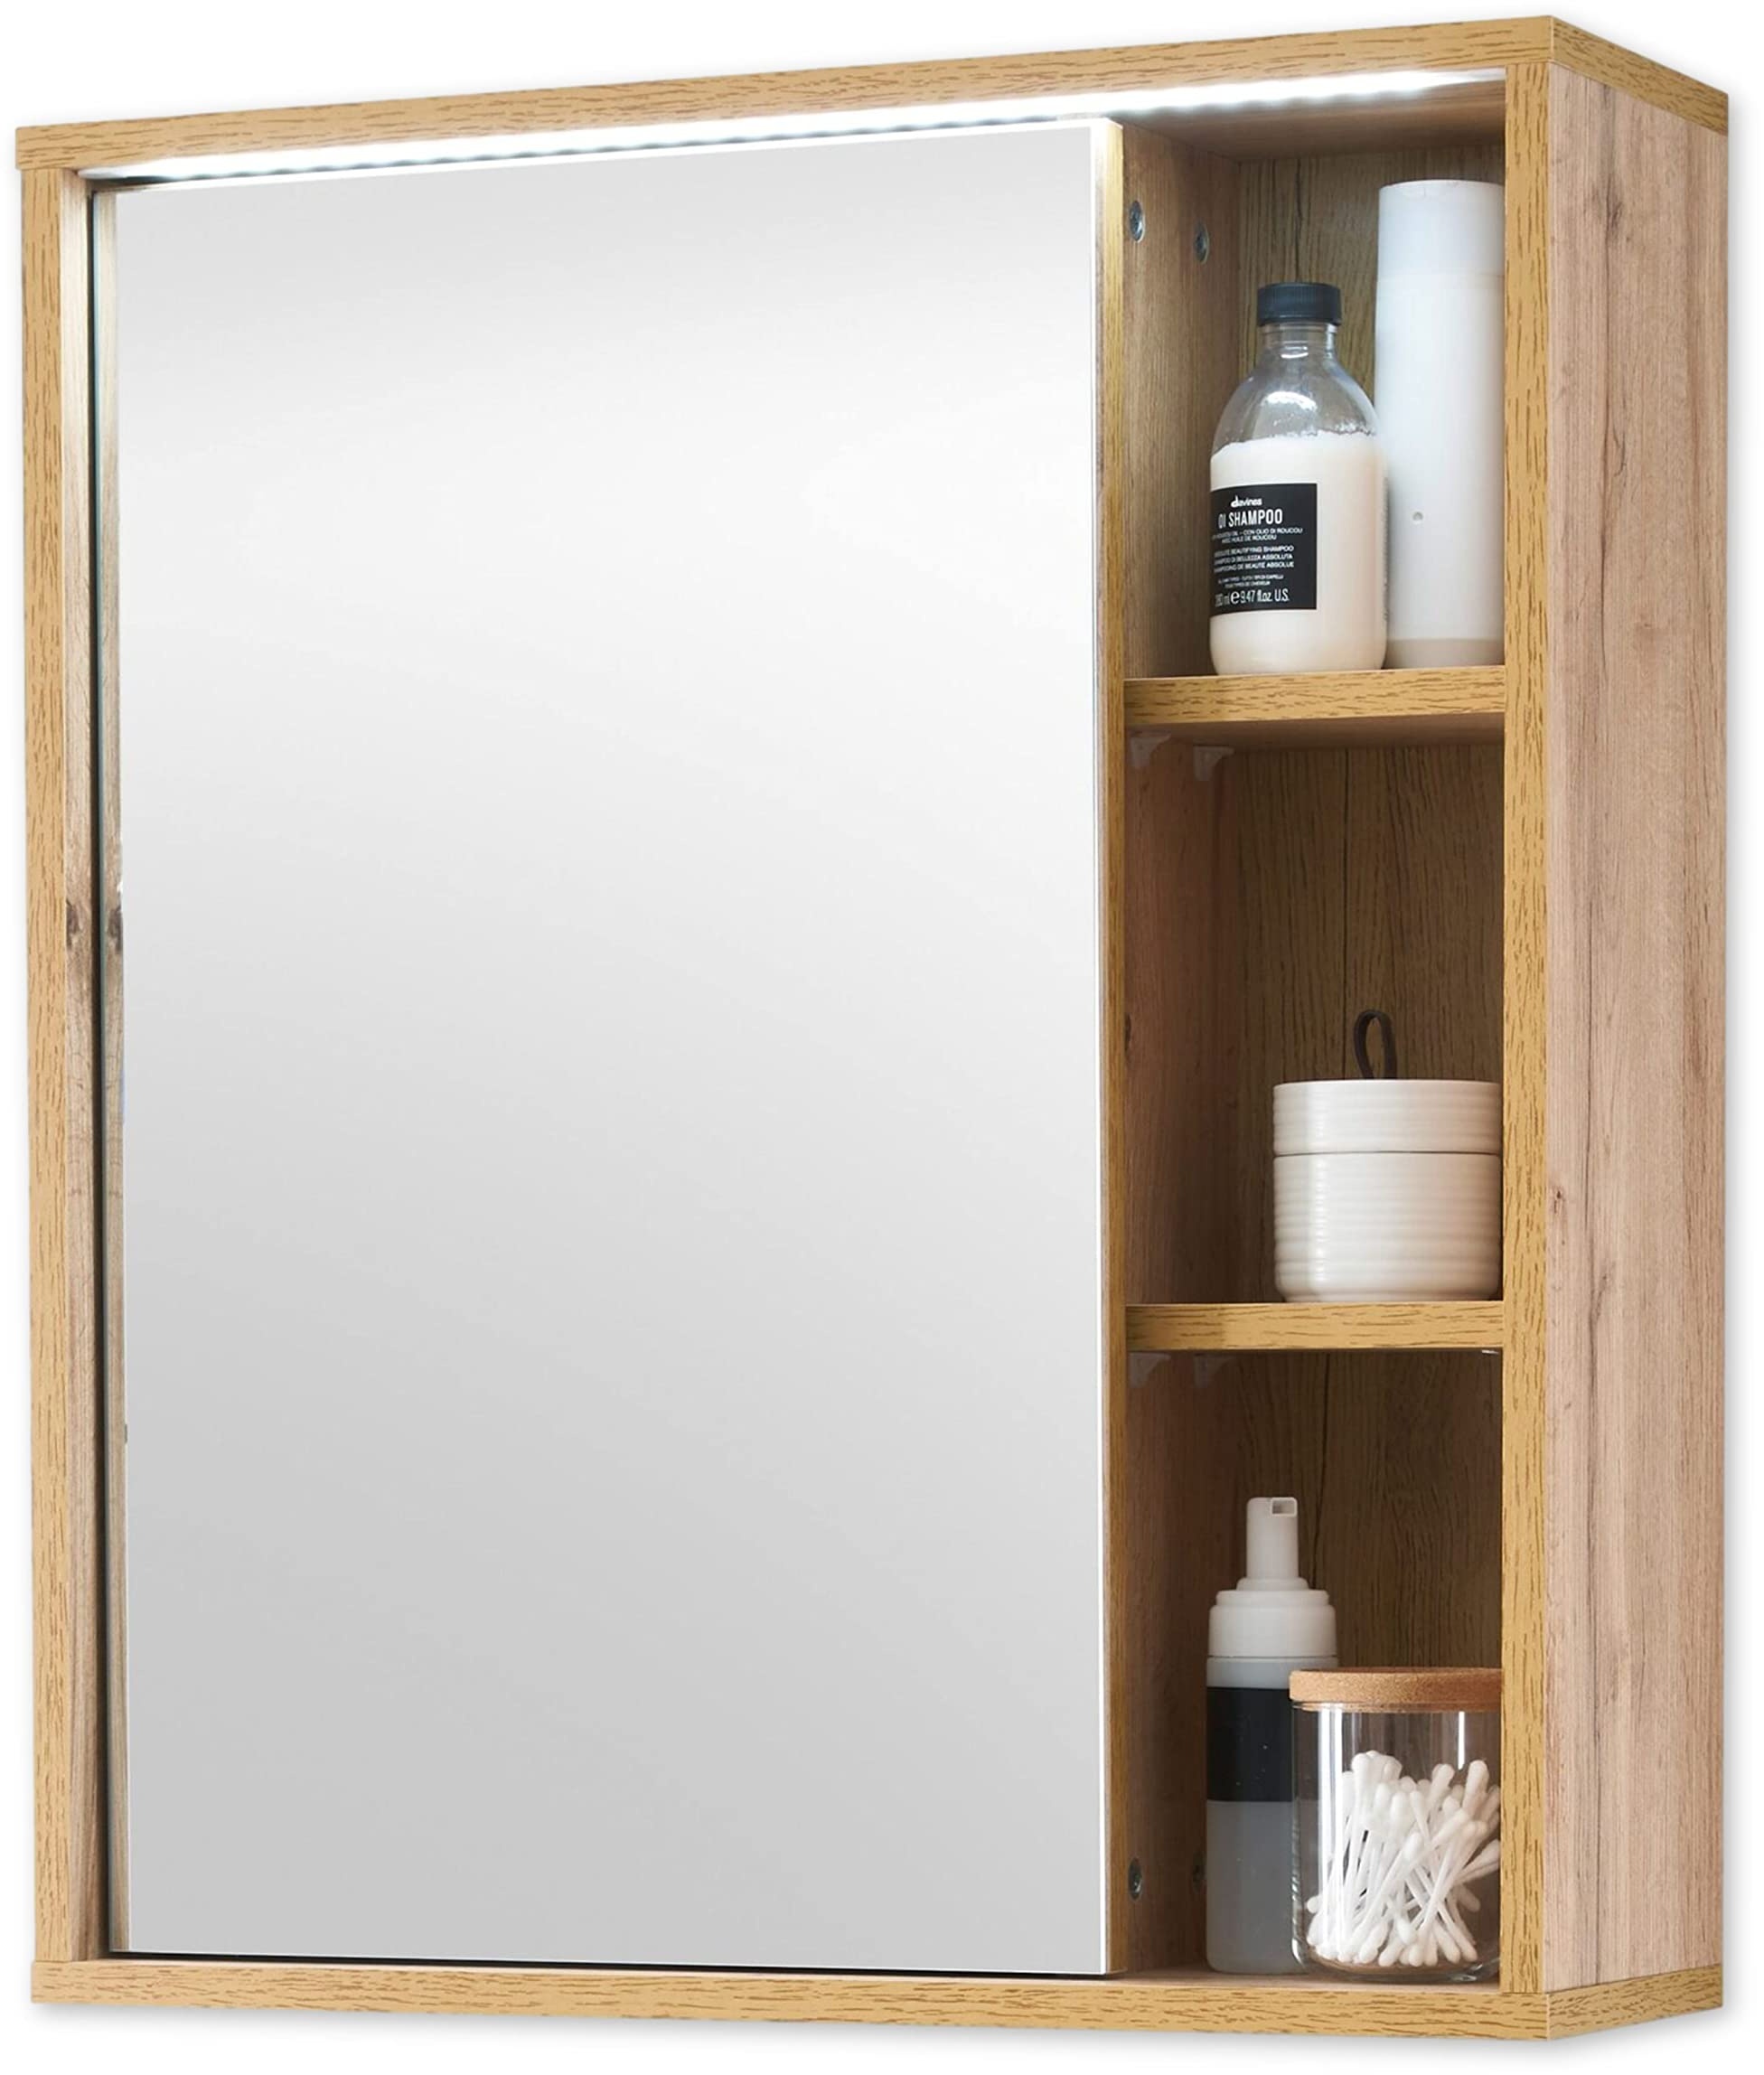 Stella Trading Spiegelschrank Bad mit LED-Beleuchtung in Wotan Eiche Optik - Badezimmerspiegel Schrank mit viel Stauraum - 60 x 70 x 20 cm (B/H/T)